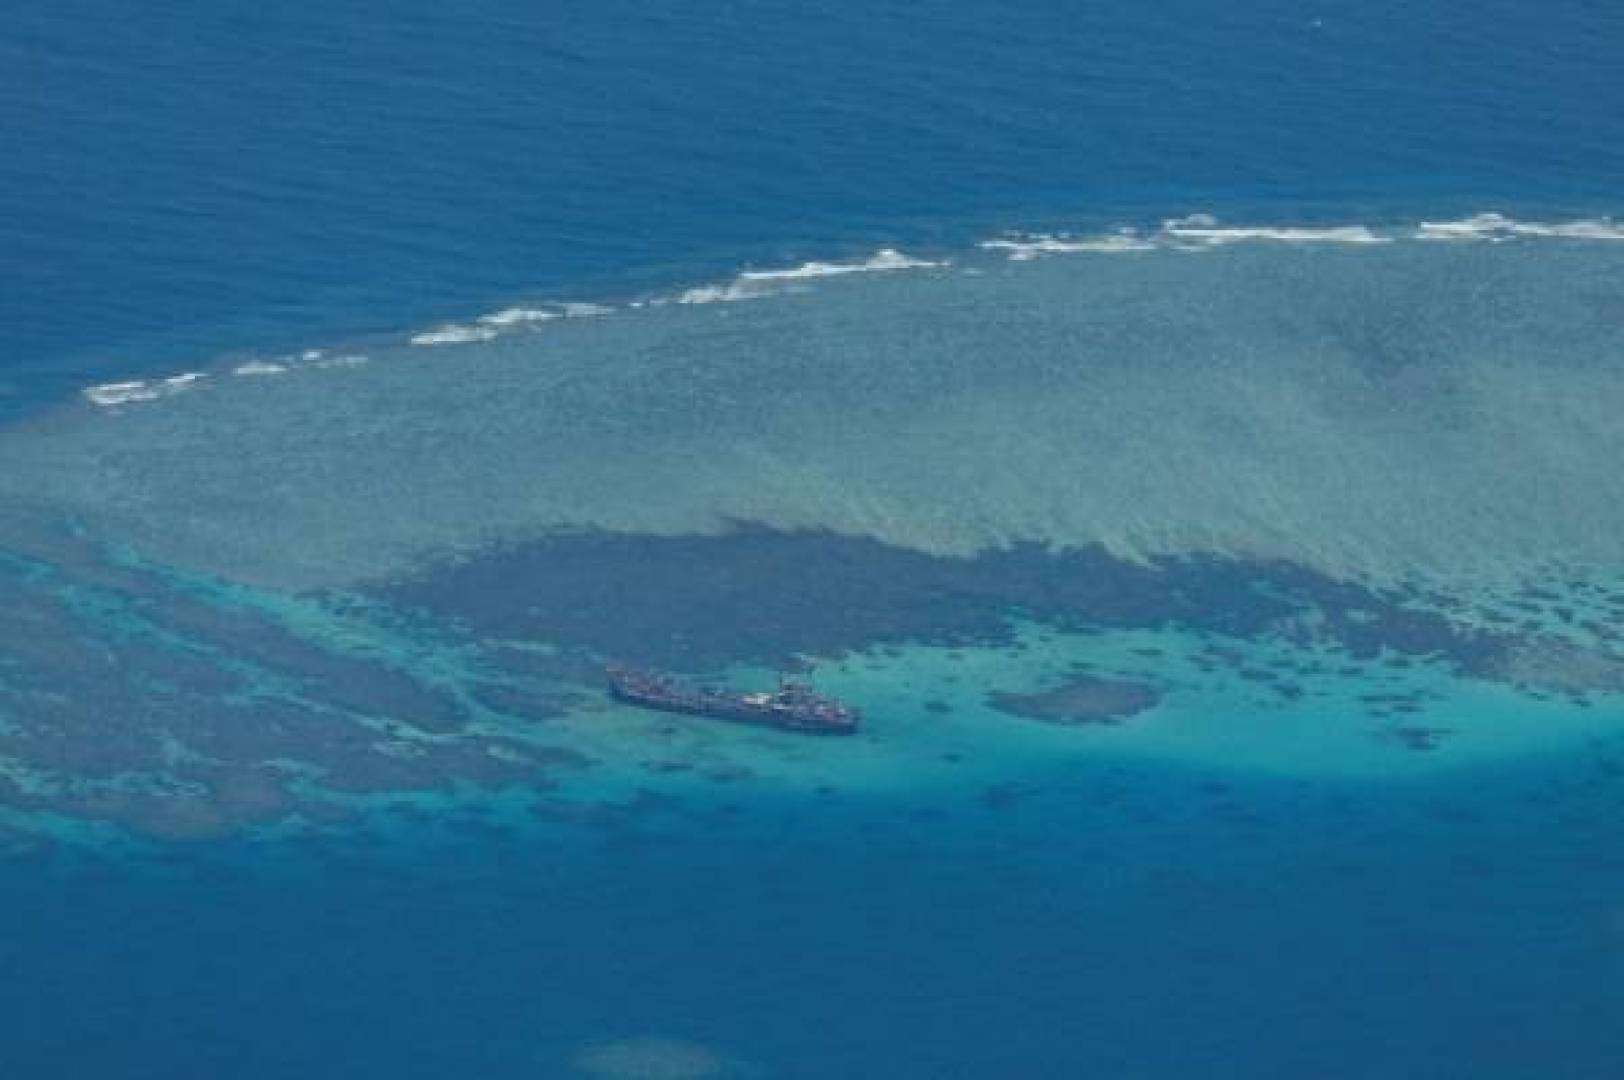 تكتيكات صينية جديدة تغير قواعد الاشتباك البحري مع الفلبين